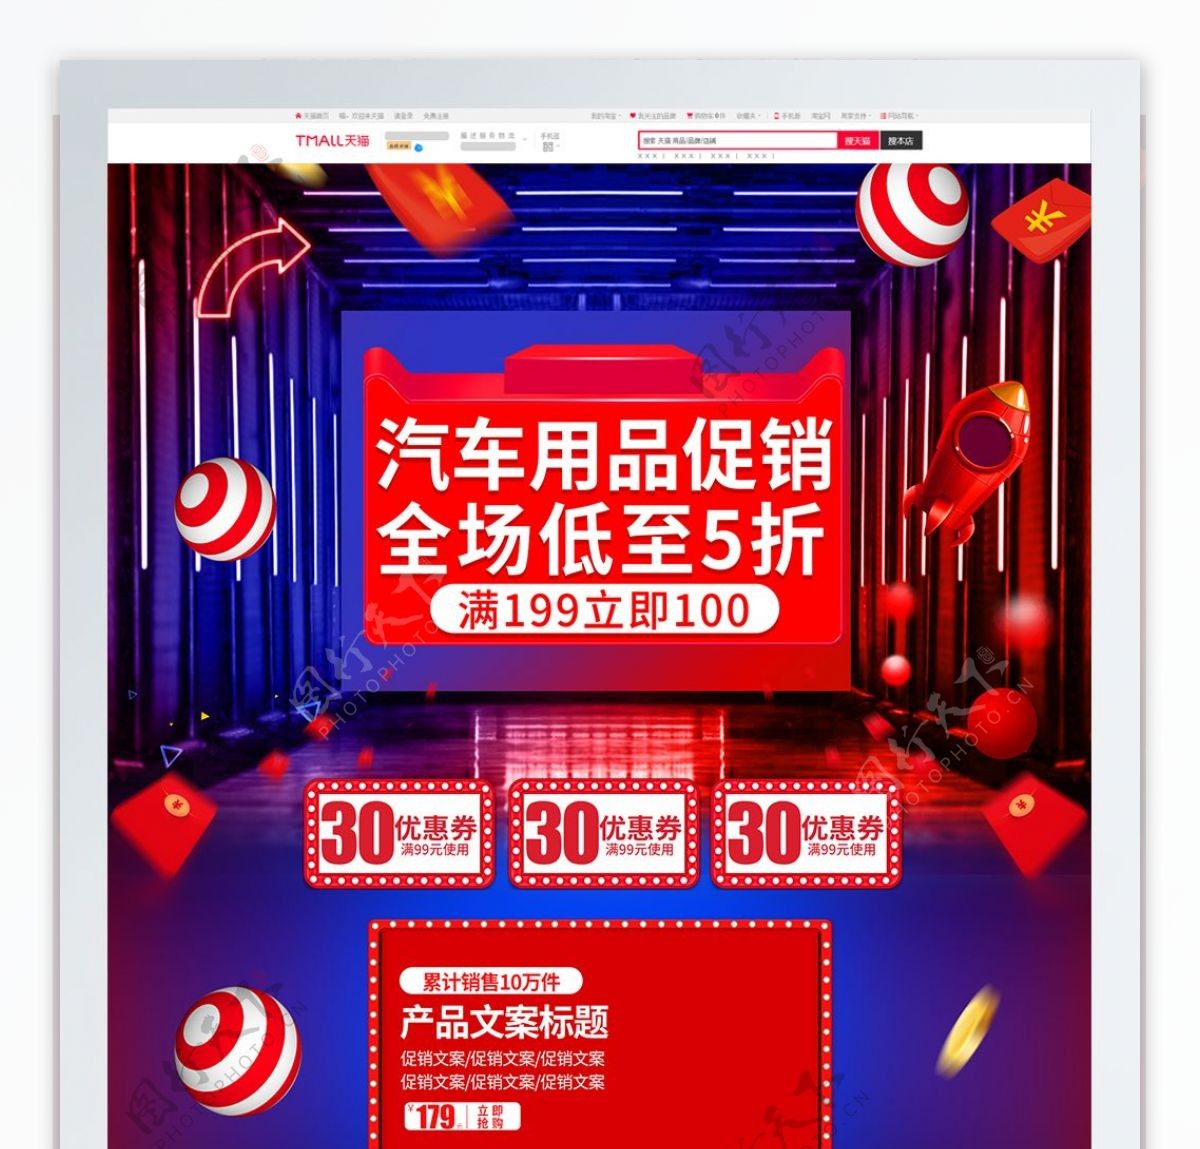 红蓝炫酷汽车用品促销活动首页电商模板